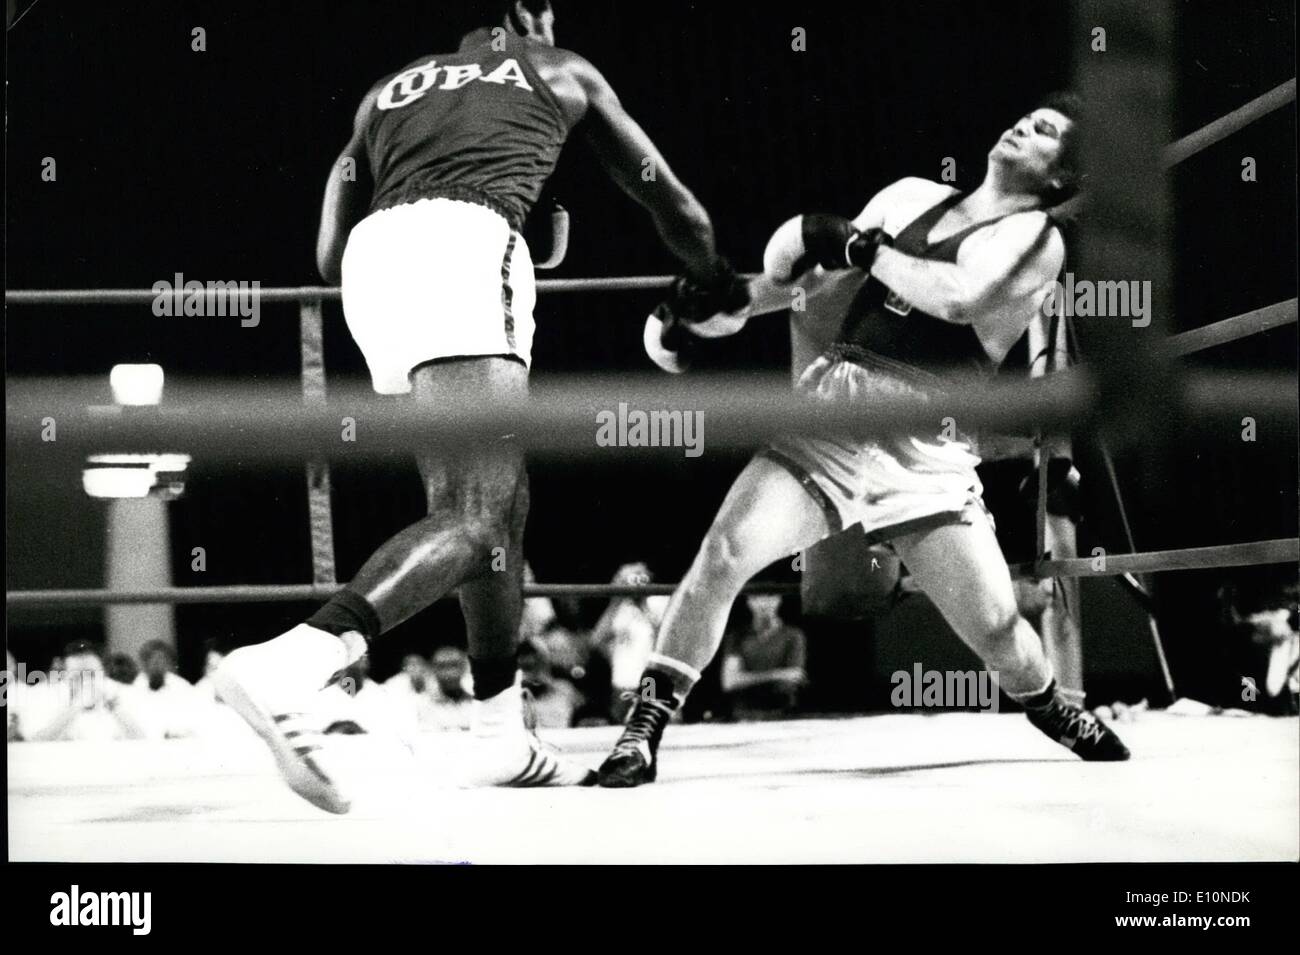 08 août 1973 - Stevenson bat Star tchèque Sommer : Santiago De Cuba Heavyweight Champion Olympique Teofilo Stevenson assommés Petr Sommer, trois fois champion de la Tchécoslovaquie, dans le ''Giraldo Cordova Cardin'' Tournoi de boxe internationale ici. Sommer, le seul boxeur à battre deux fois en 1971, Stevenson a été abattu au premier tour par une violente dès le peuple cubain. Le tournoi est organisé dans le cadre des festivités marquant le 20e anniversaire de l'attaque de la caserne de Moncada, qui a marqué le début de l'insurrection armée contre la dictature de Fulgencio Batista Banque D'Images